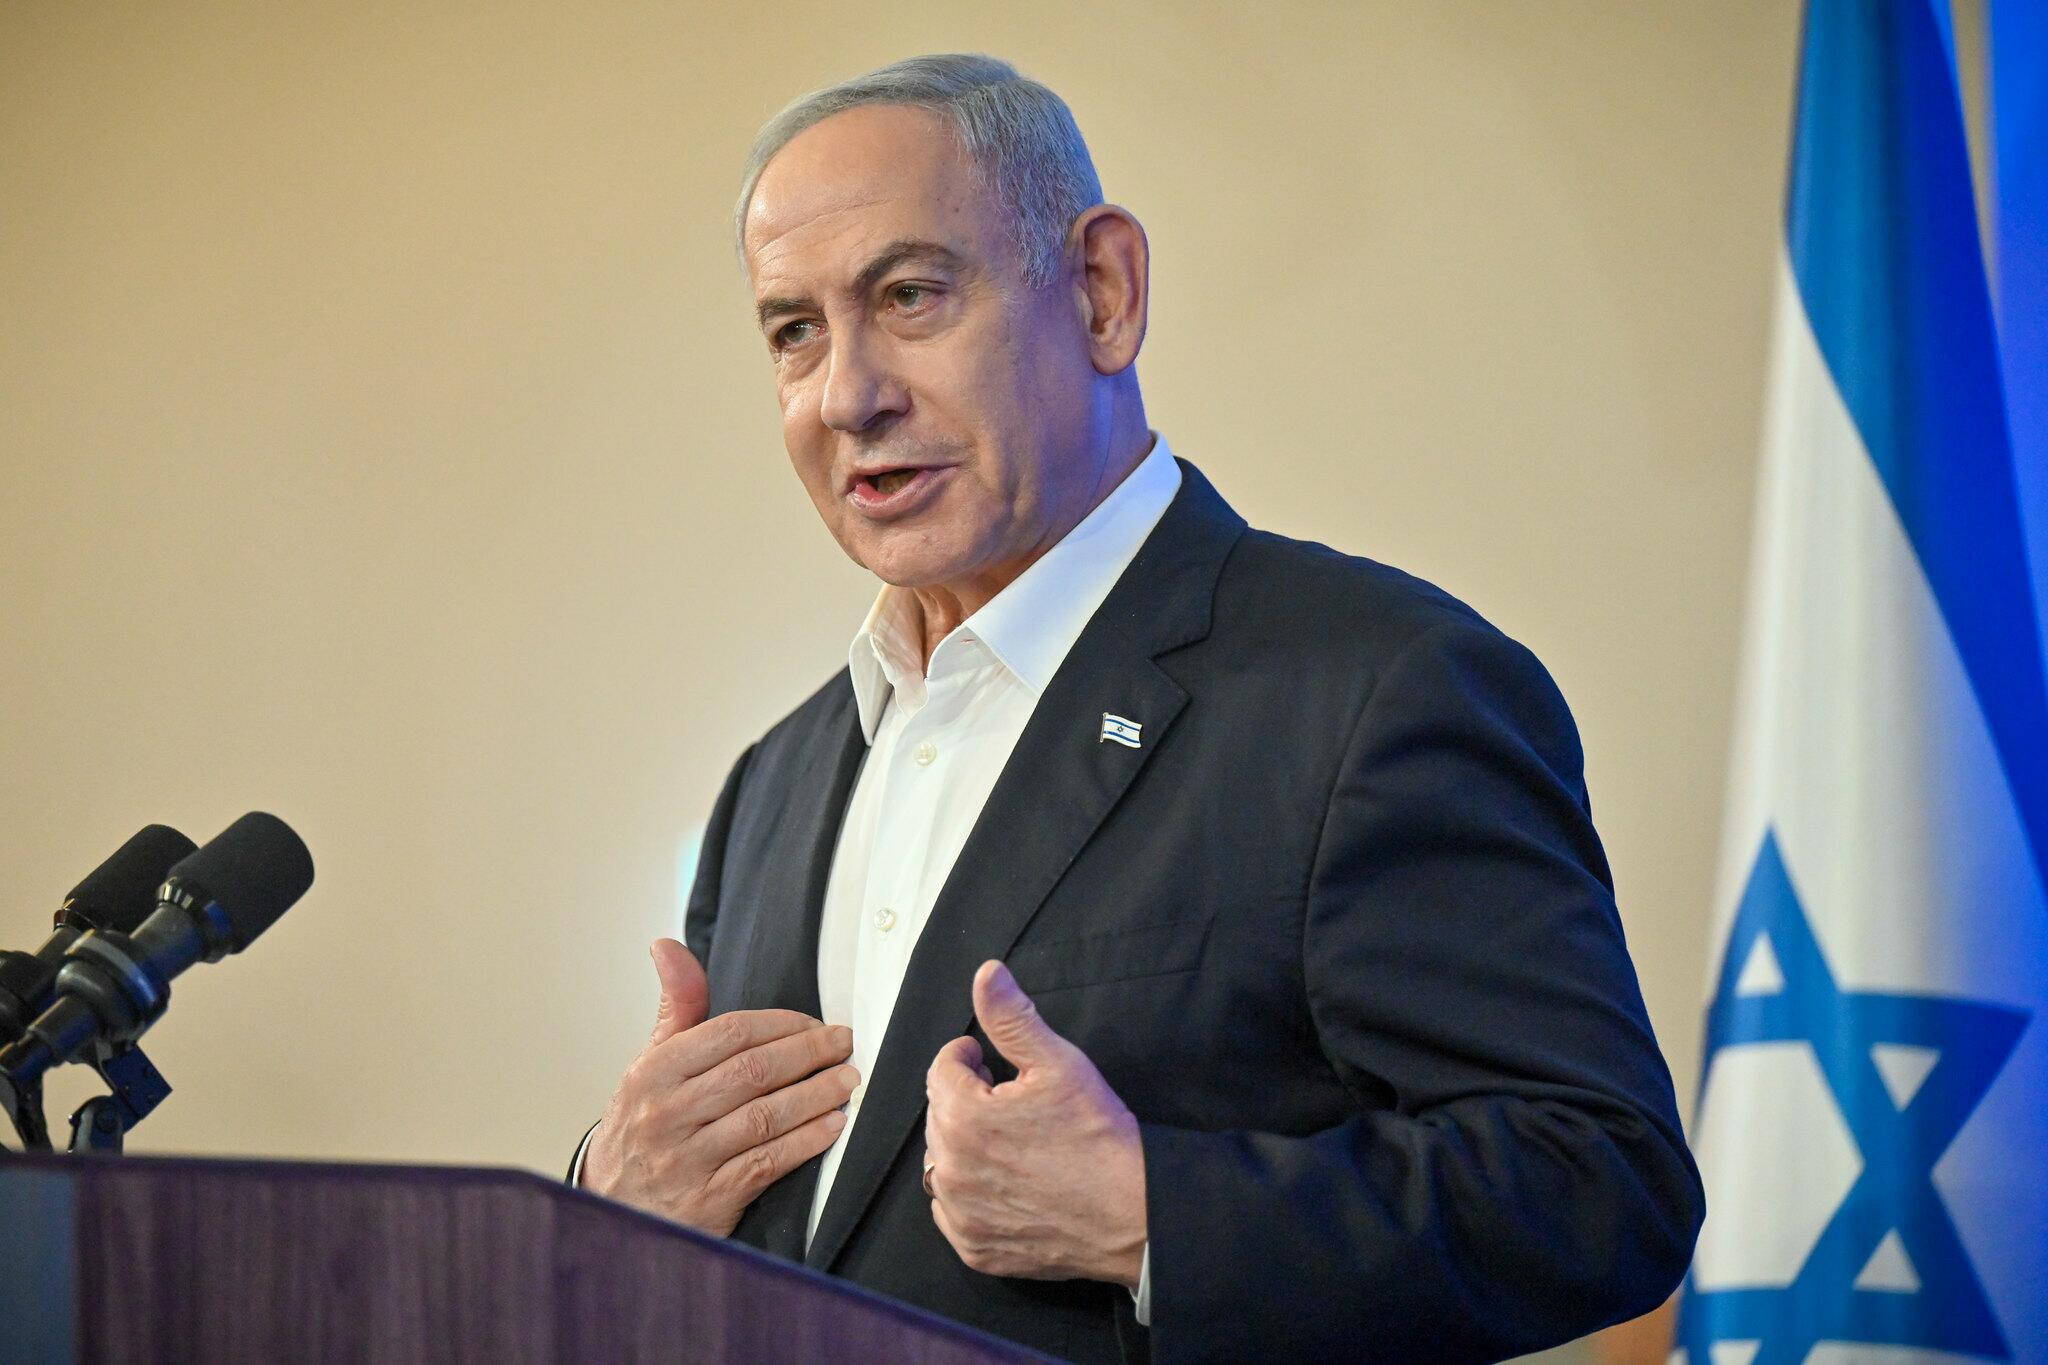 Foto mostra o primeiro-ministro israelense falando; atrás dele há uma bandeira de Israel